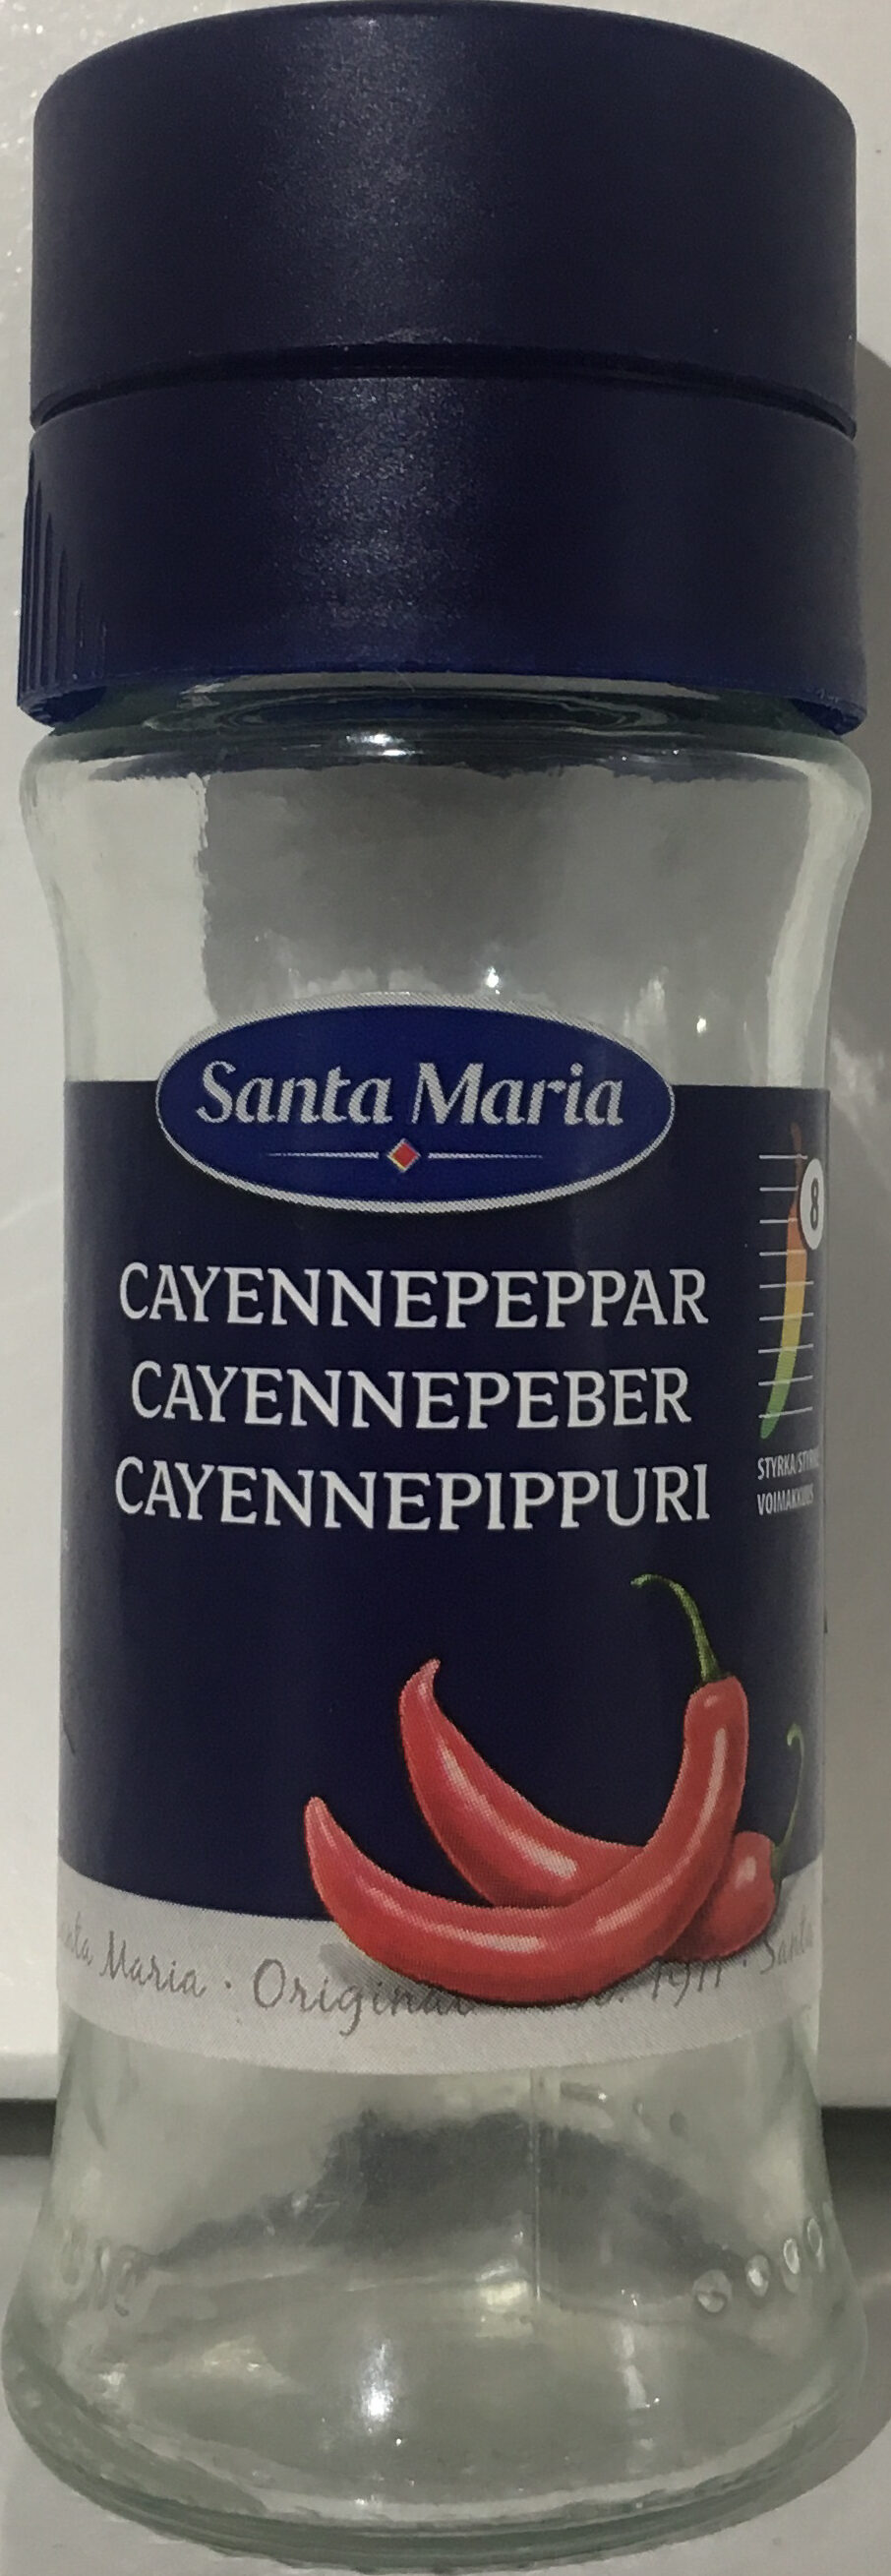 Cayennepepper - Produkt